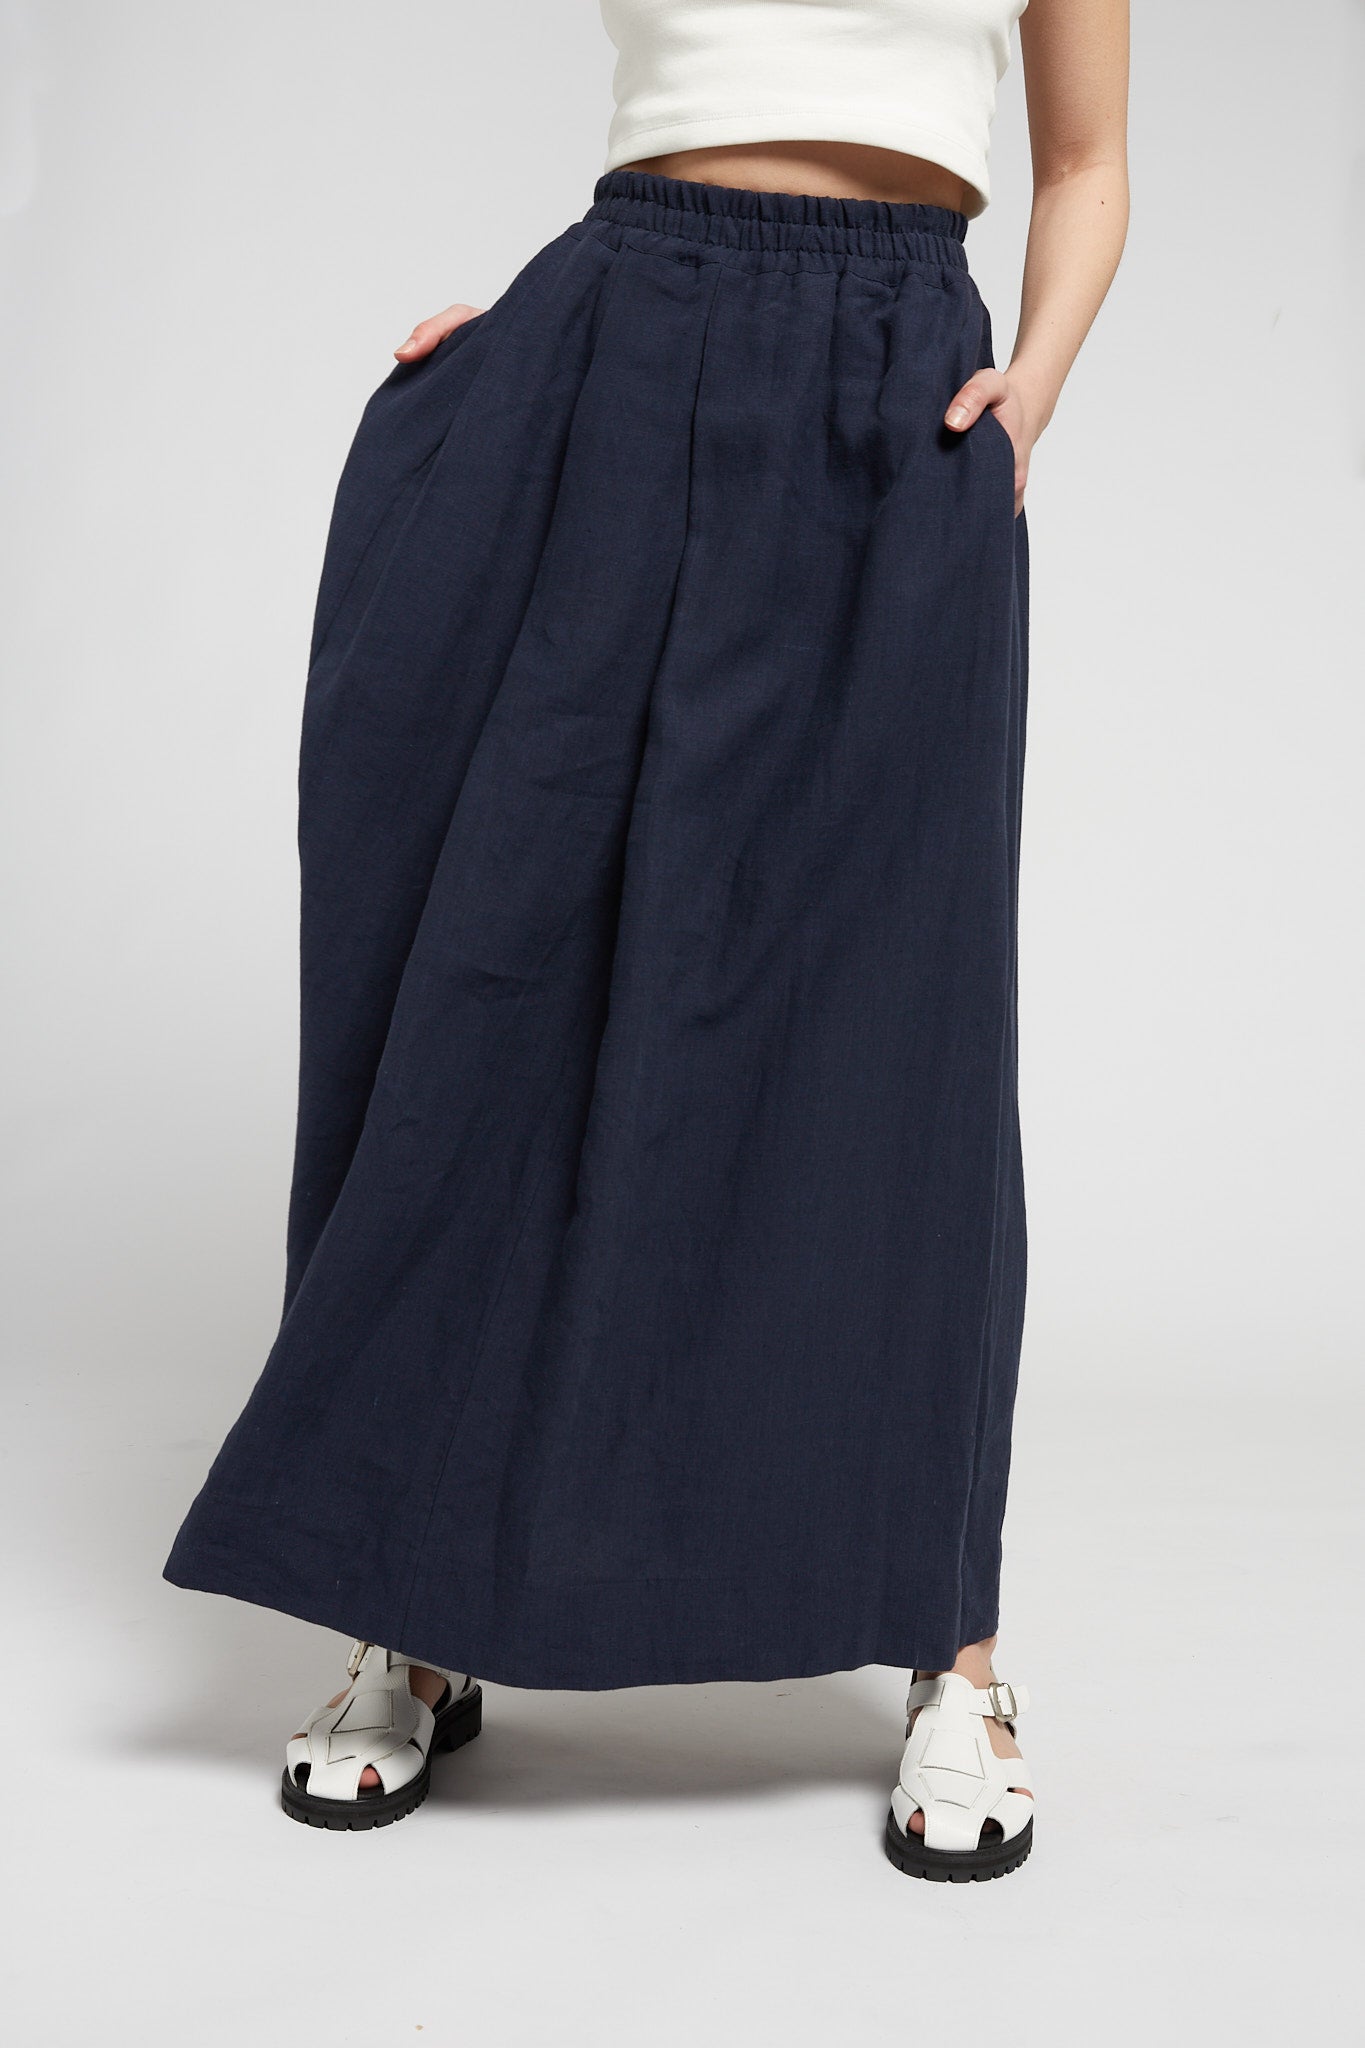 A.BCH A.50 Navy Asymmetric Pleated Skirt in Organic Linen